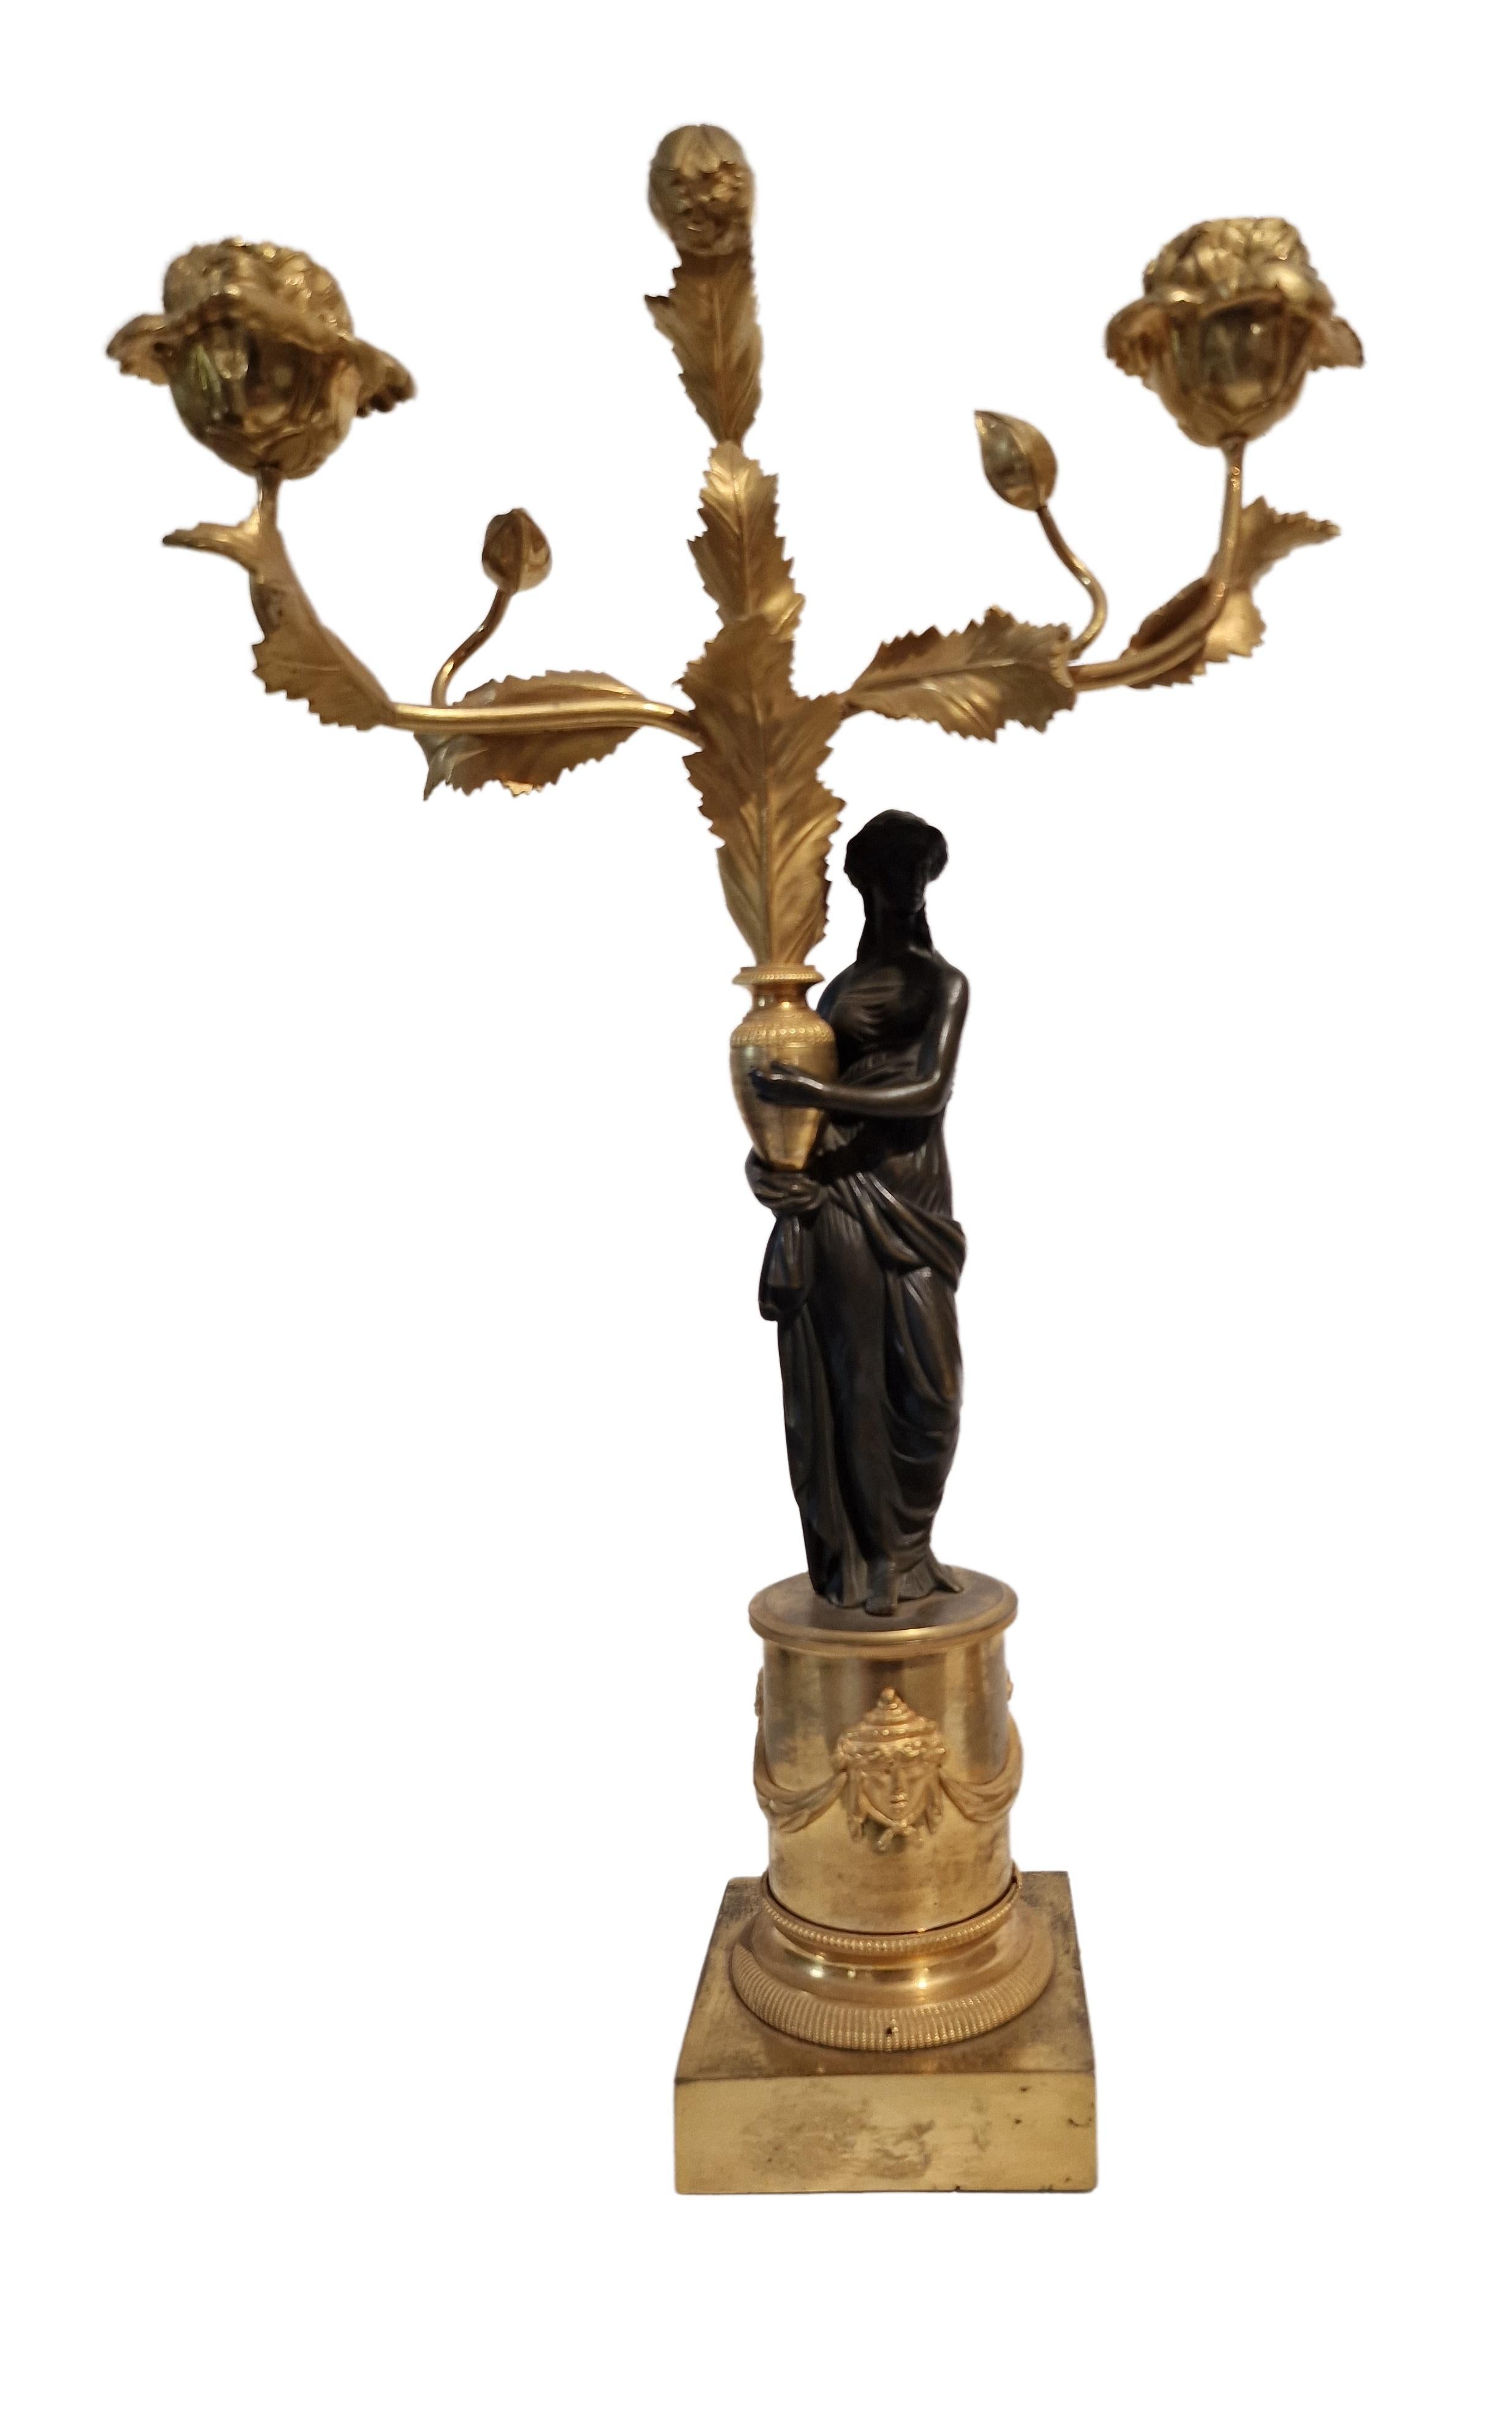 Superbe paire de Calle, fabriquée en France vers 1810, à l'époque de l'Empire. 

Les piédestaux à gradins sont joliment décorés de masques et de guirlandes. Sur chacun d'eux se trouve une figure féminine en bronze de style antique (la draperie et la